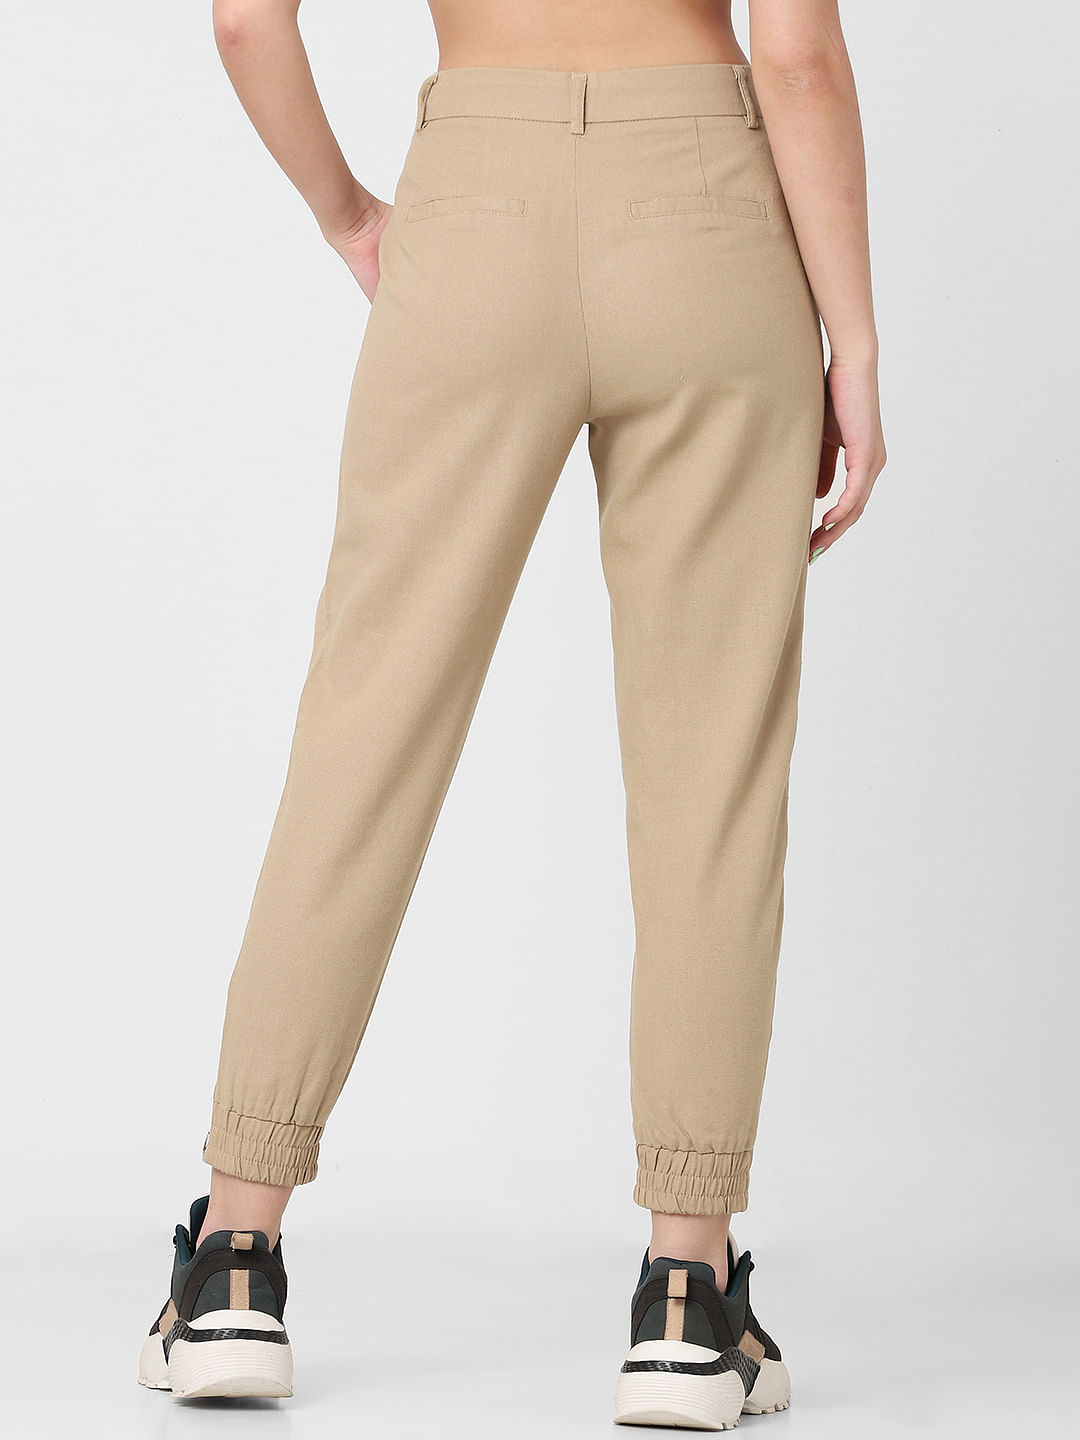 Ladies Cargo Pants Skinny Stretch Womens Jeans khaki Sizes 6 8 10 12 14 |  eBay